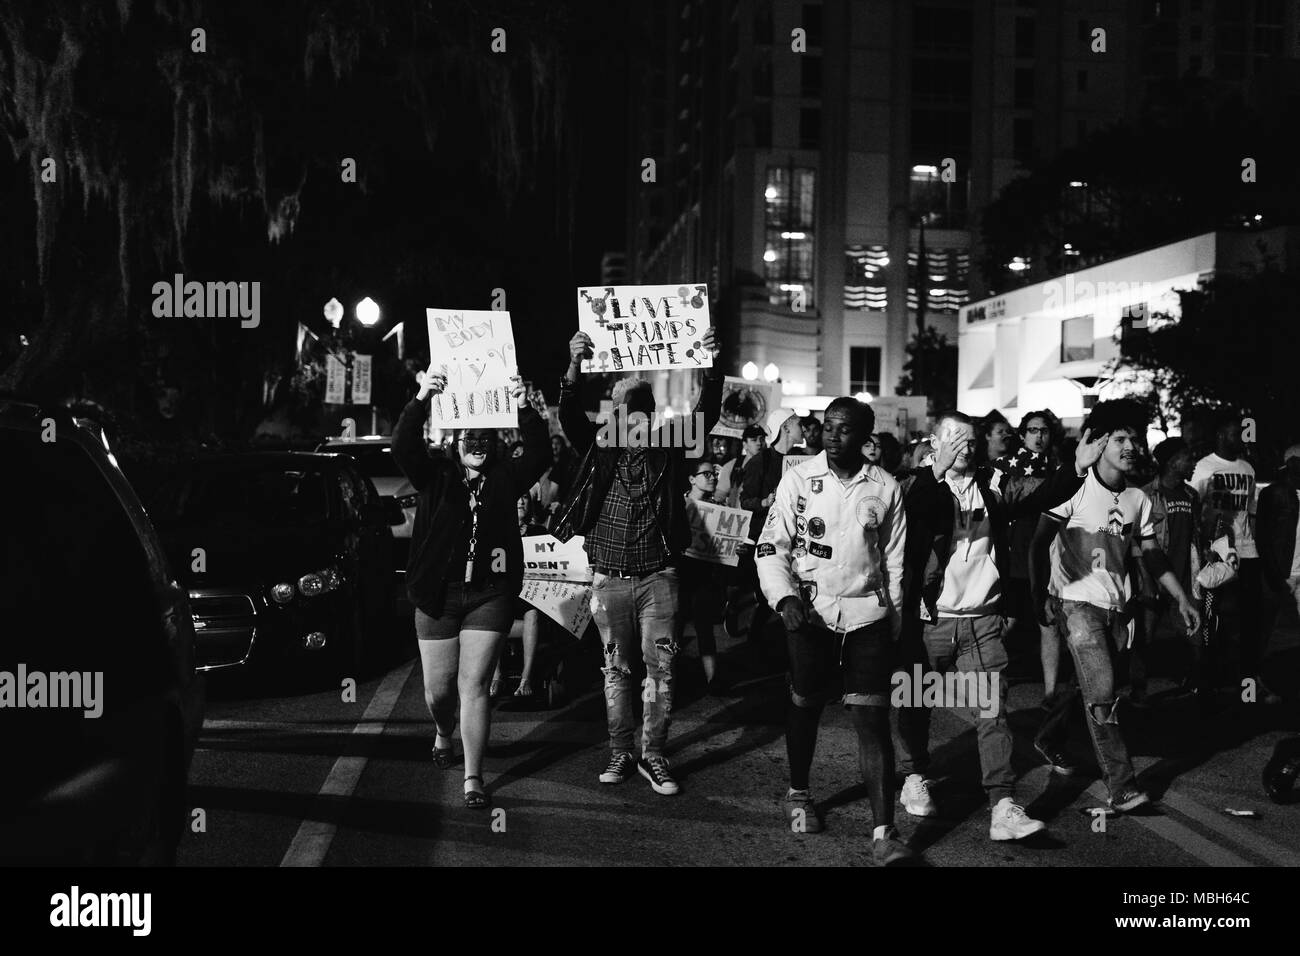 Anti-Trump protesta pacifica nel centro di Orlando (2016). Foto Stock